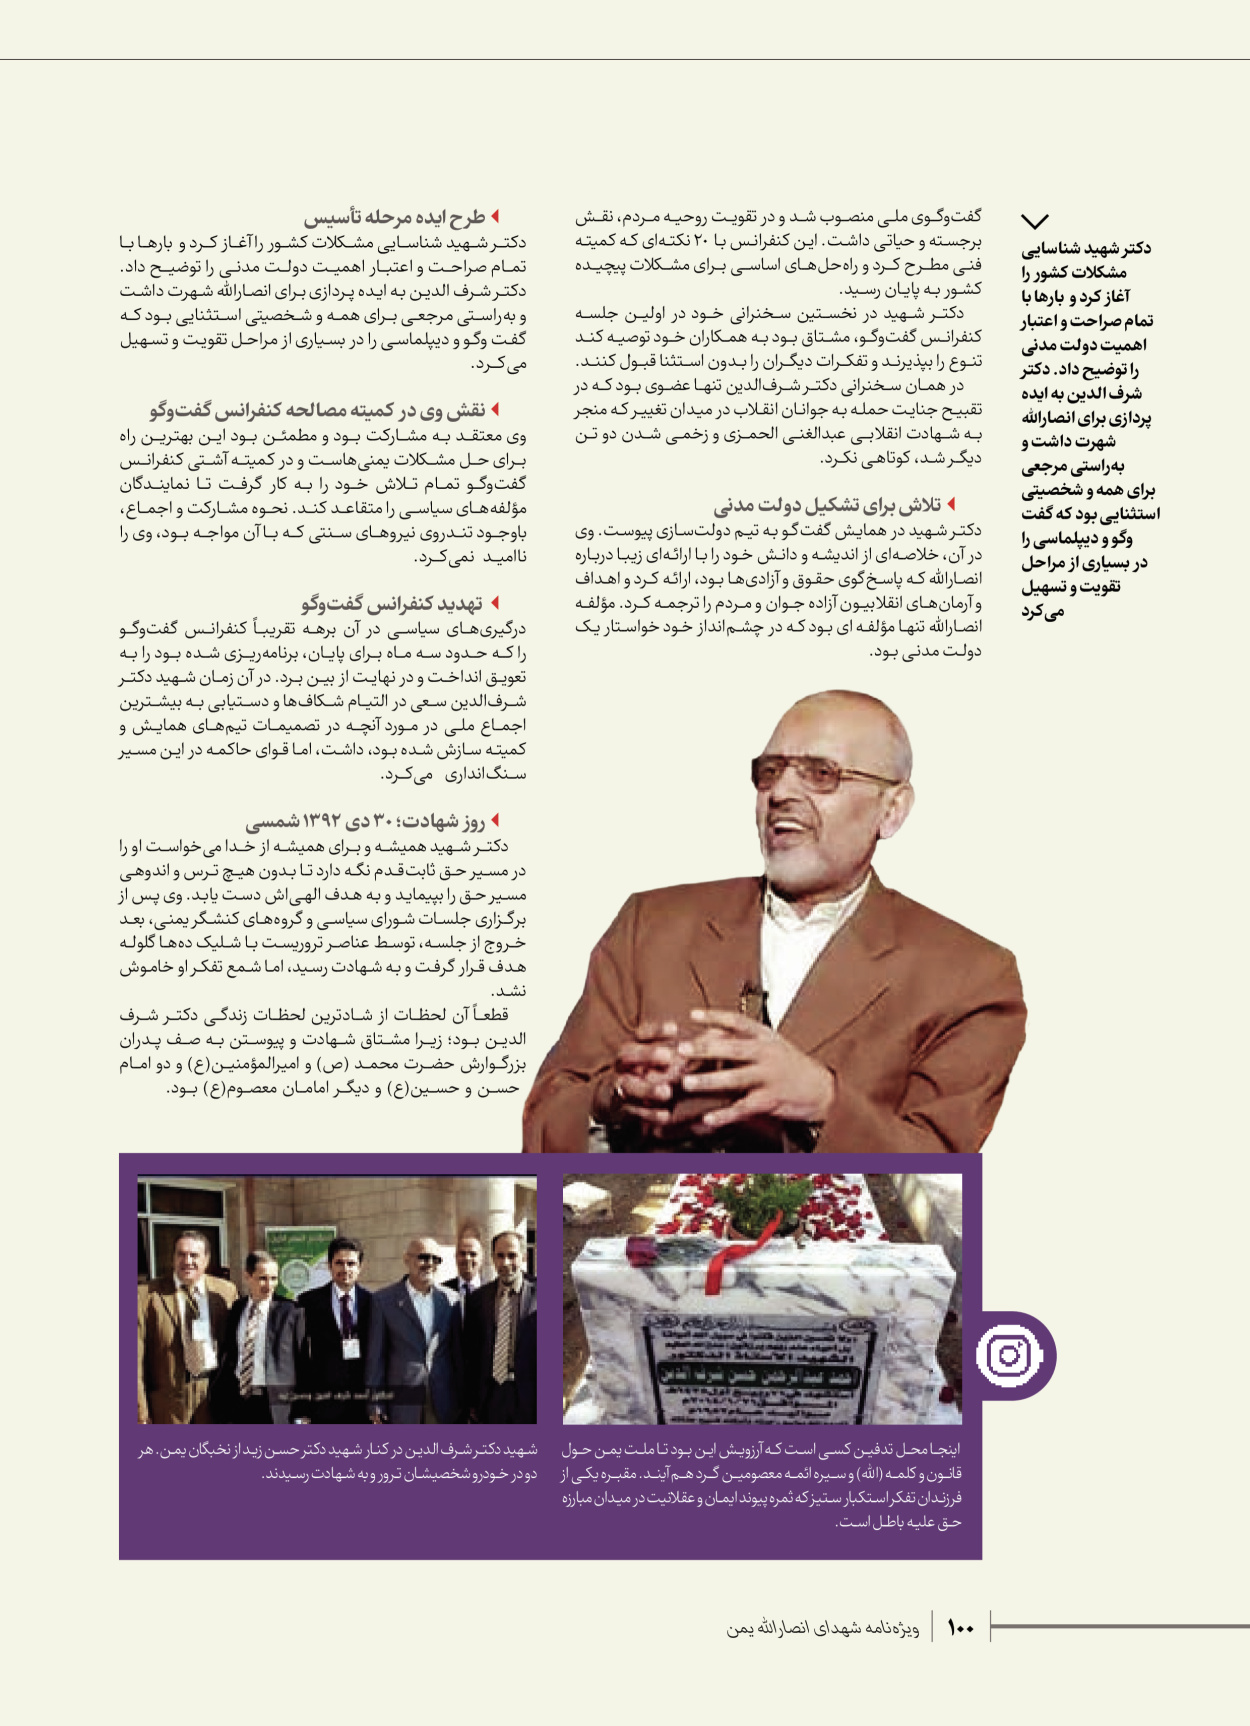 روزنامه ایران - ویژه نامه شهدای قدس ۴ - ۰۱ اسفند ۱۴۰۲ - صفحه ۱۰۰